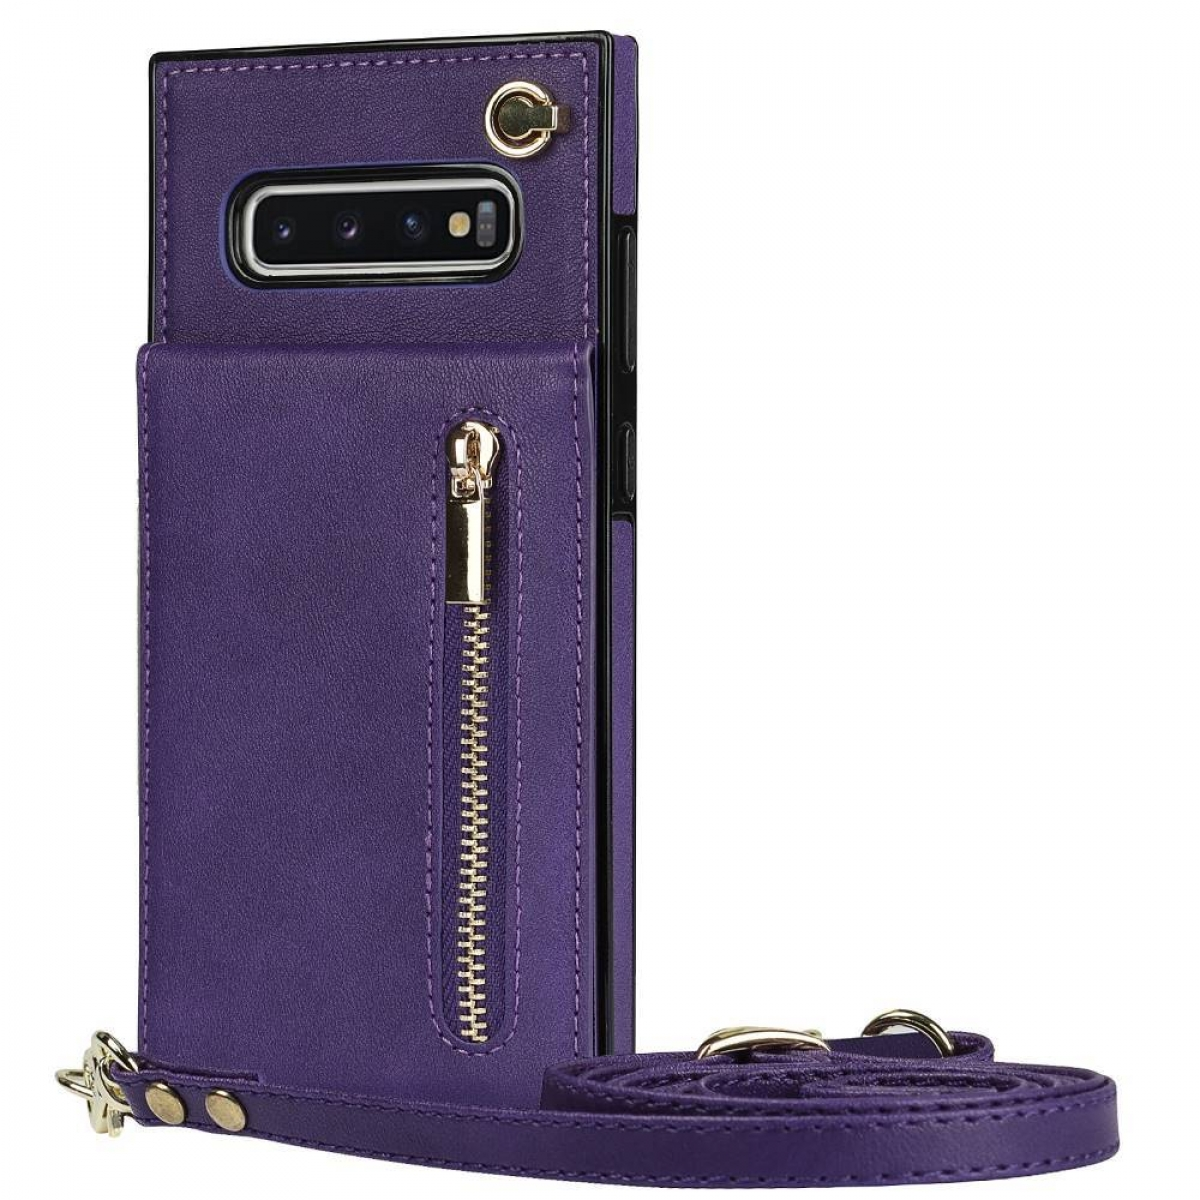 Samsung, Necklace, S10, Zipper CASEONLINE Violett Galaxy Umhängetasche,